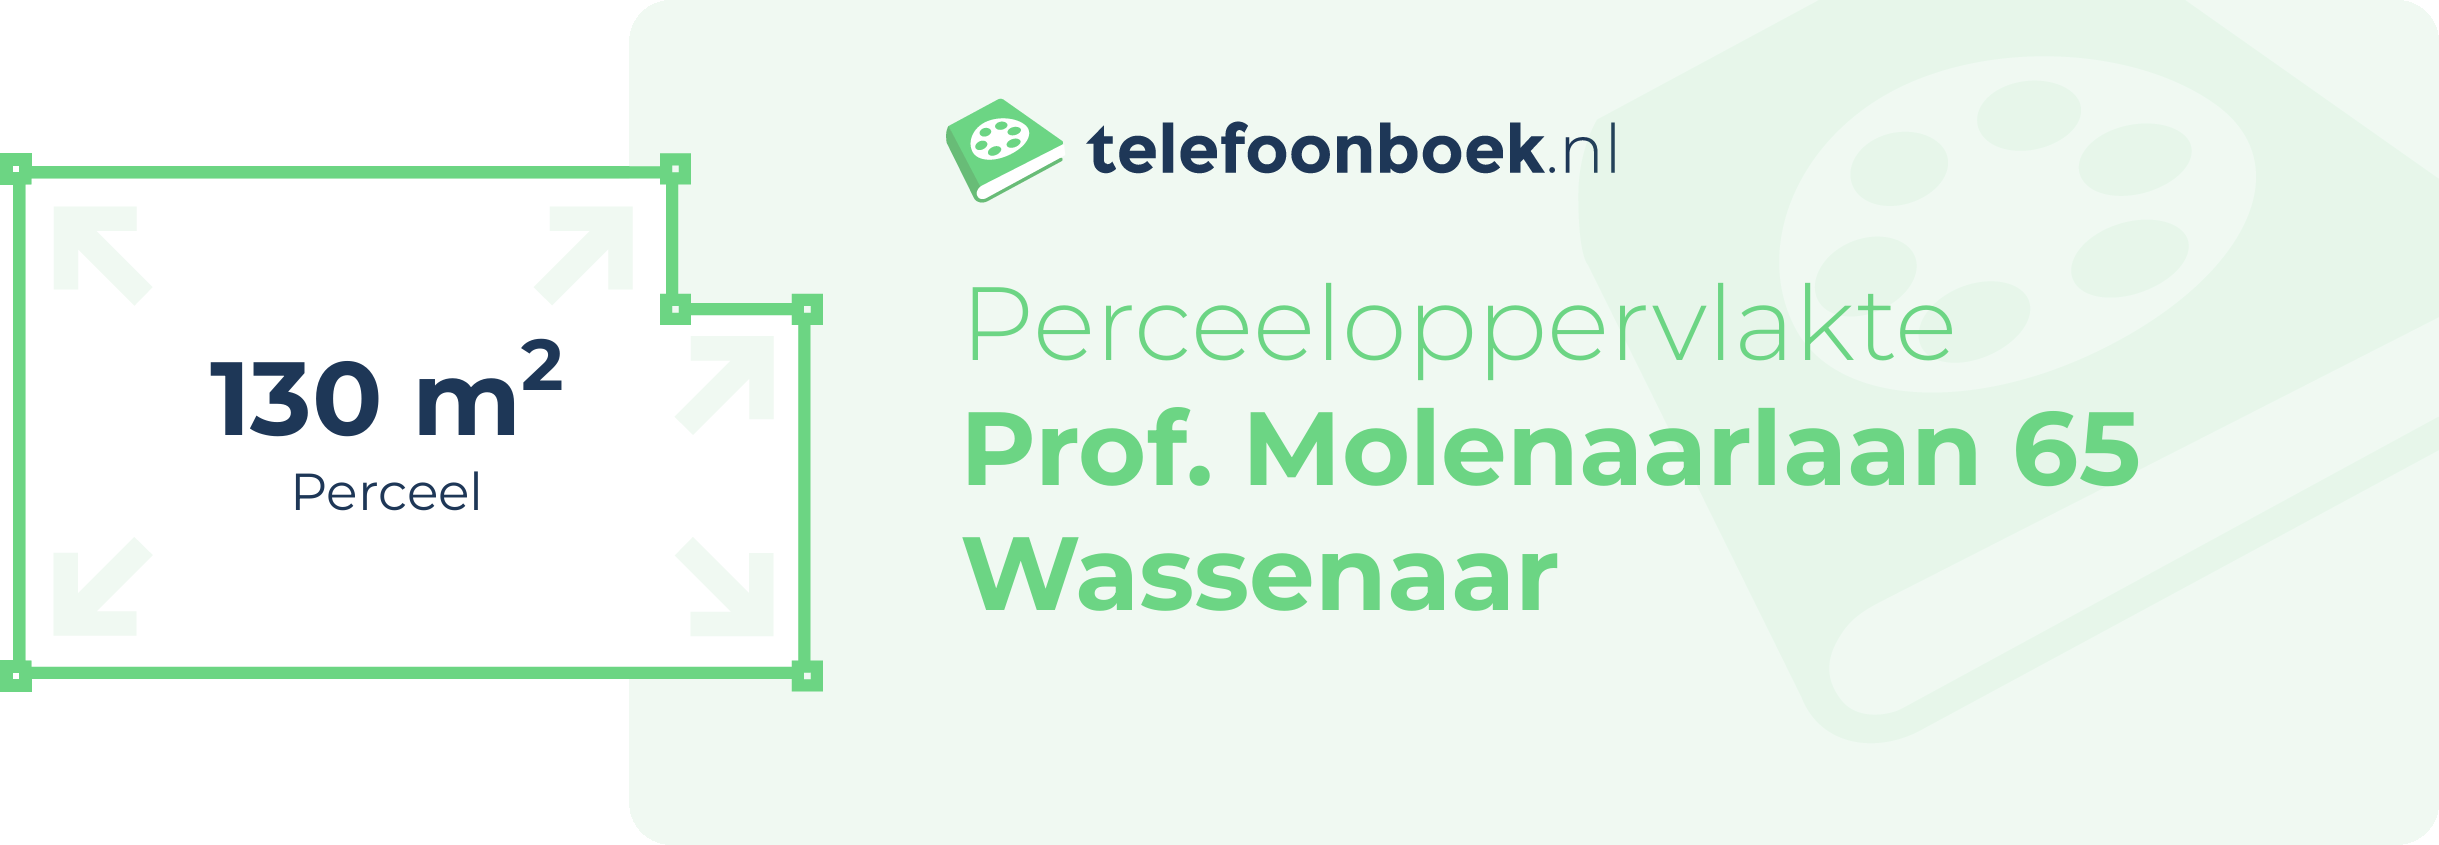 Perceeloppervlakte Prof. Molenaarlaan 65 Wassenaar